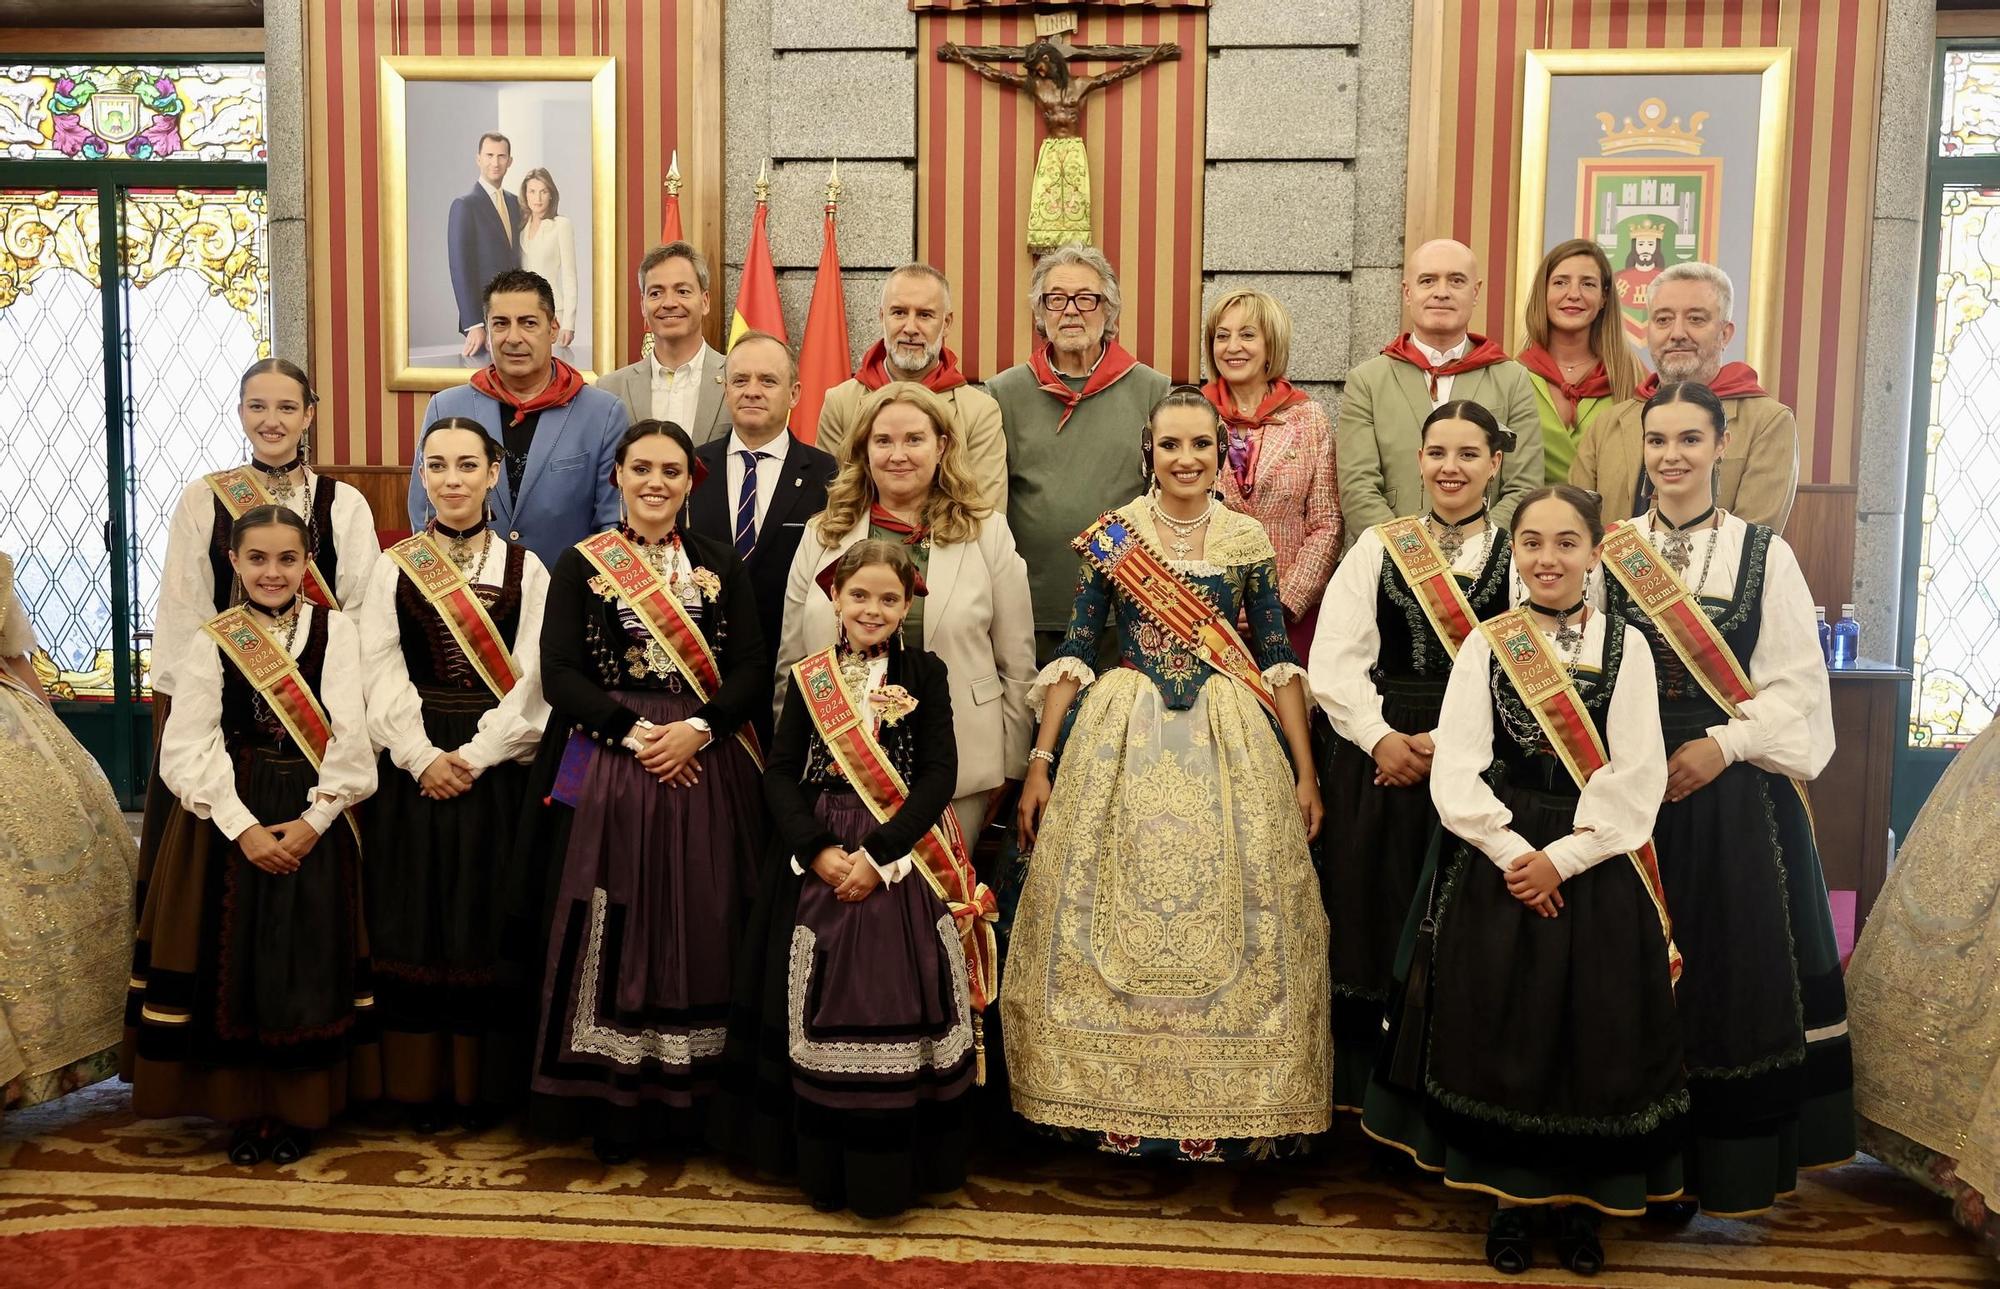 María Estela y la corte en Burgos. Flores falleras en homenaje a El Cid